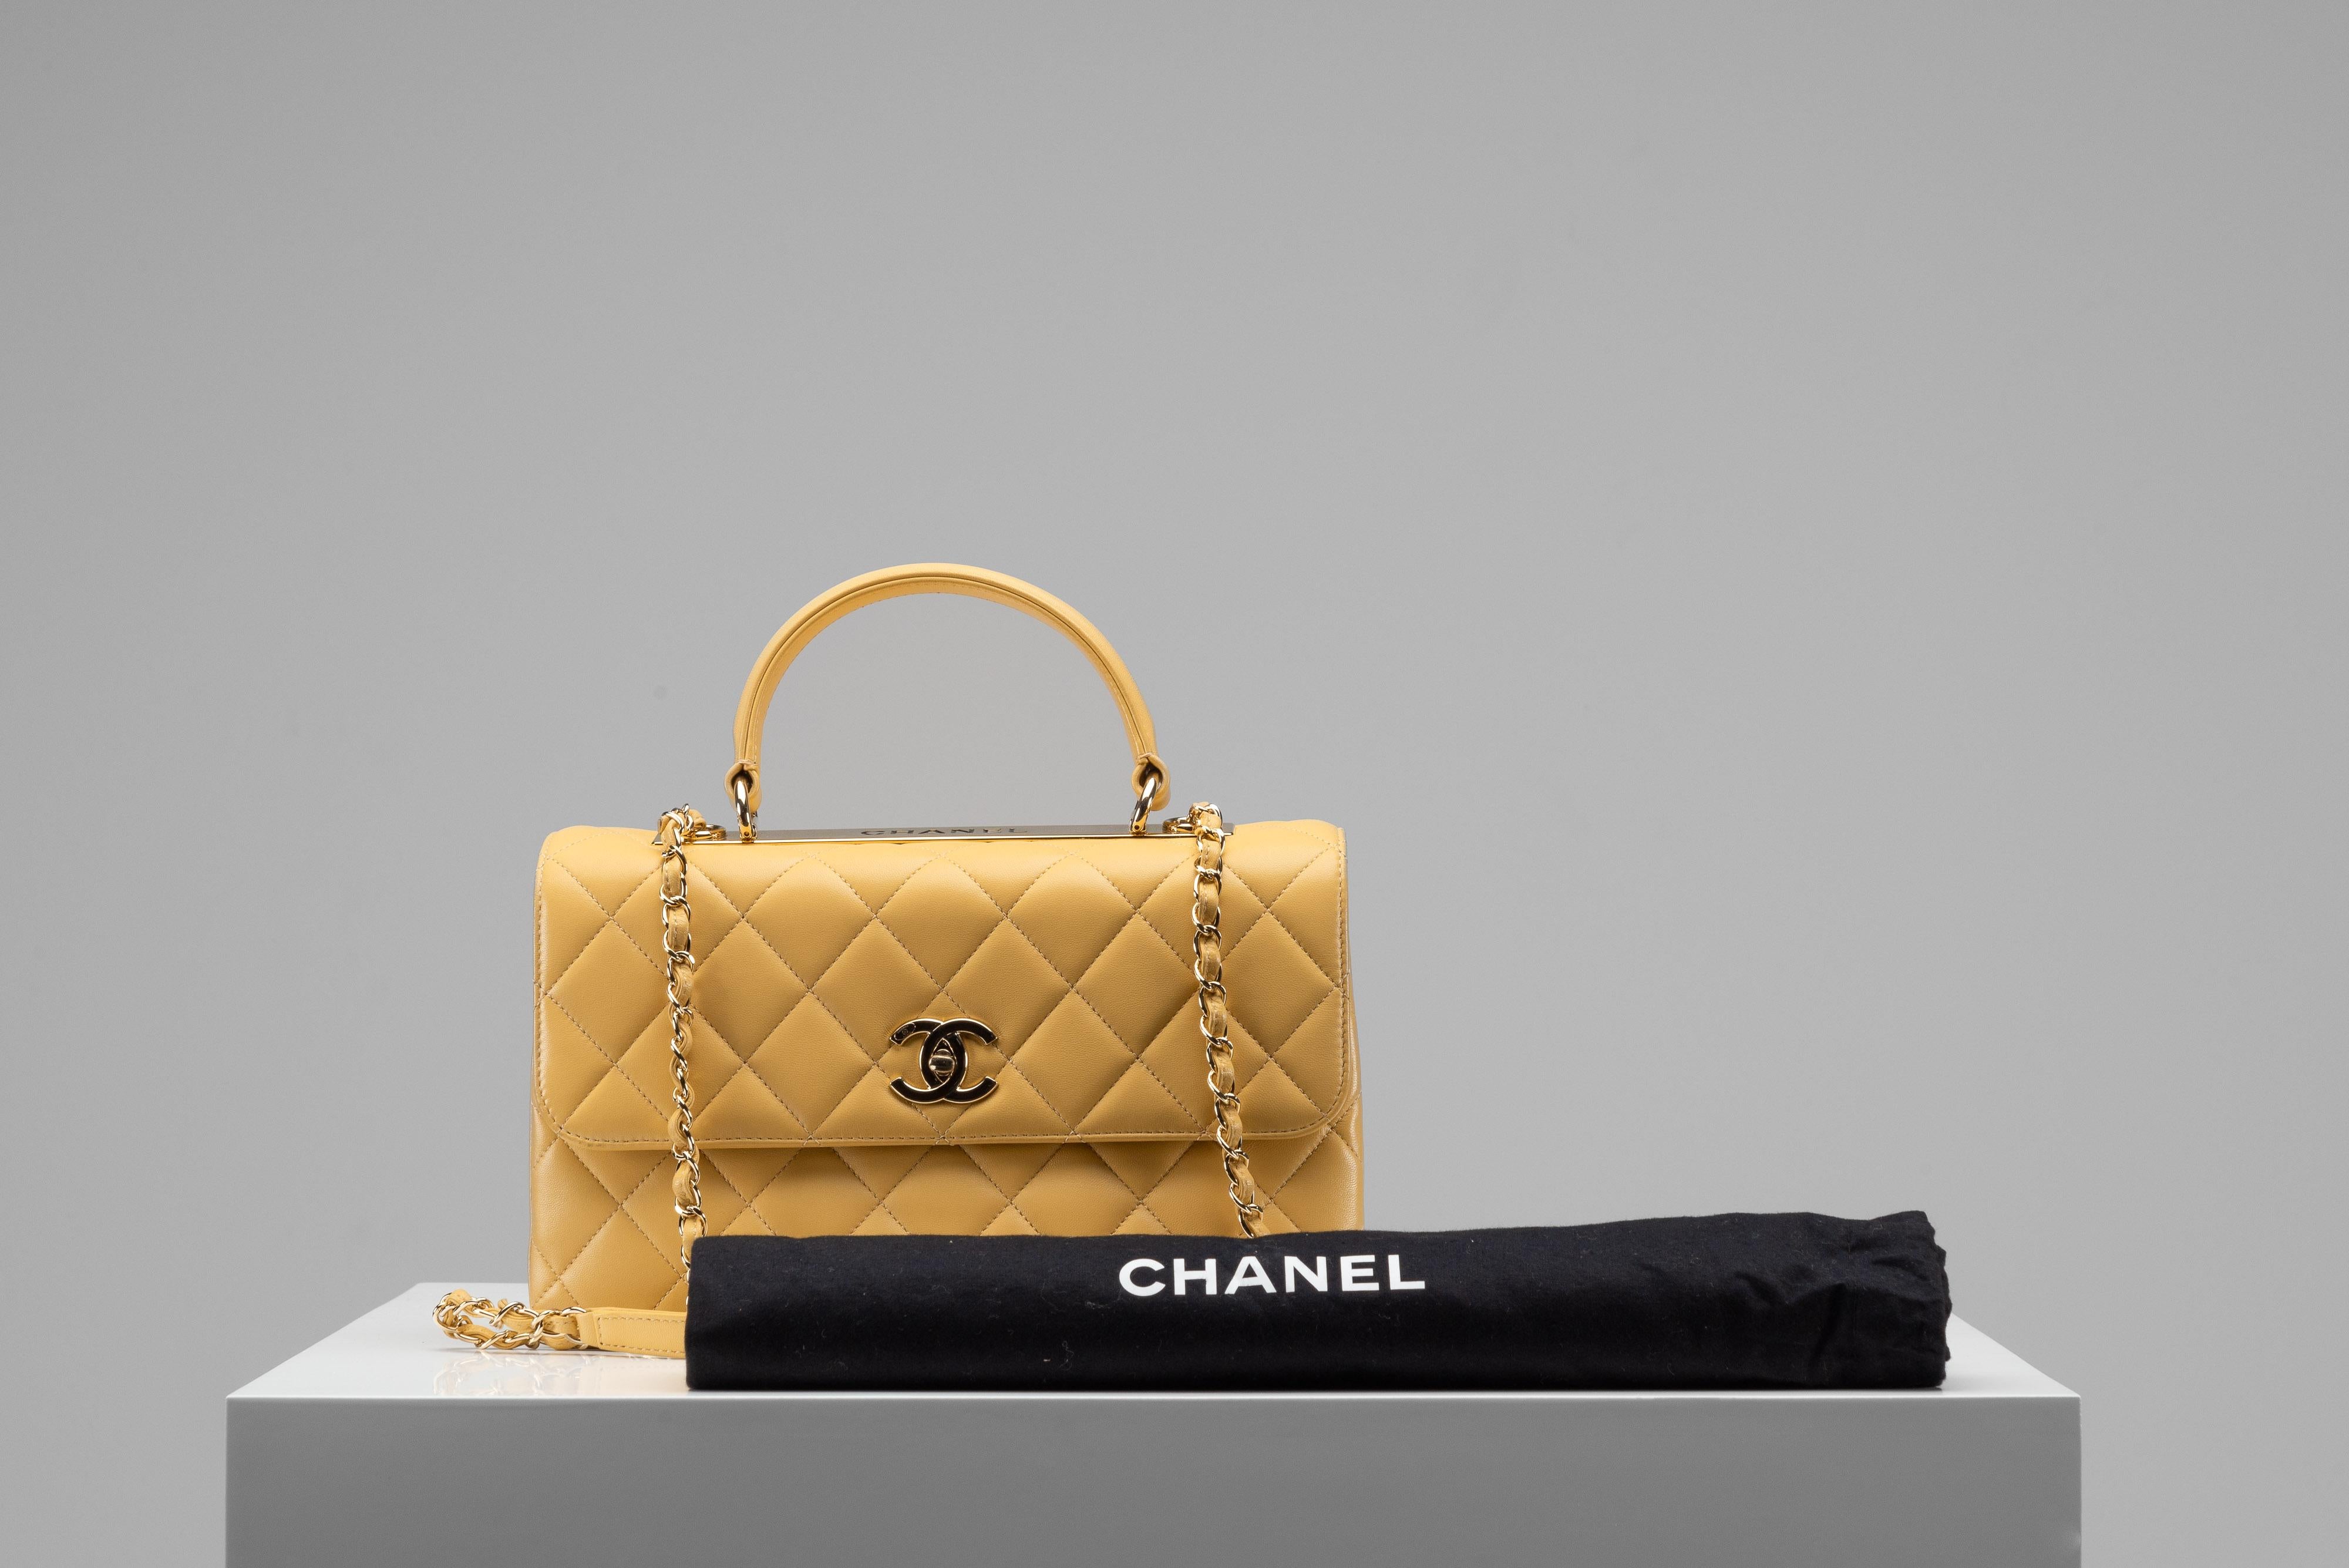 De la Collection SINETI nous vous proposons ce sac Chanel Trendy CC :
- Marque : Chanel
- Modèle : Trendy CC Medium
- Couleur : jaune
- Année : 2017
- Condit : Très bon état
- MATERIAL : Peau d'agneau, accessoires couleur or
- Extras : Hologramme,